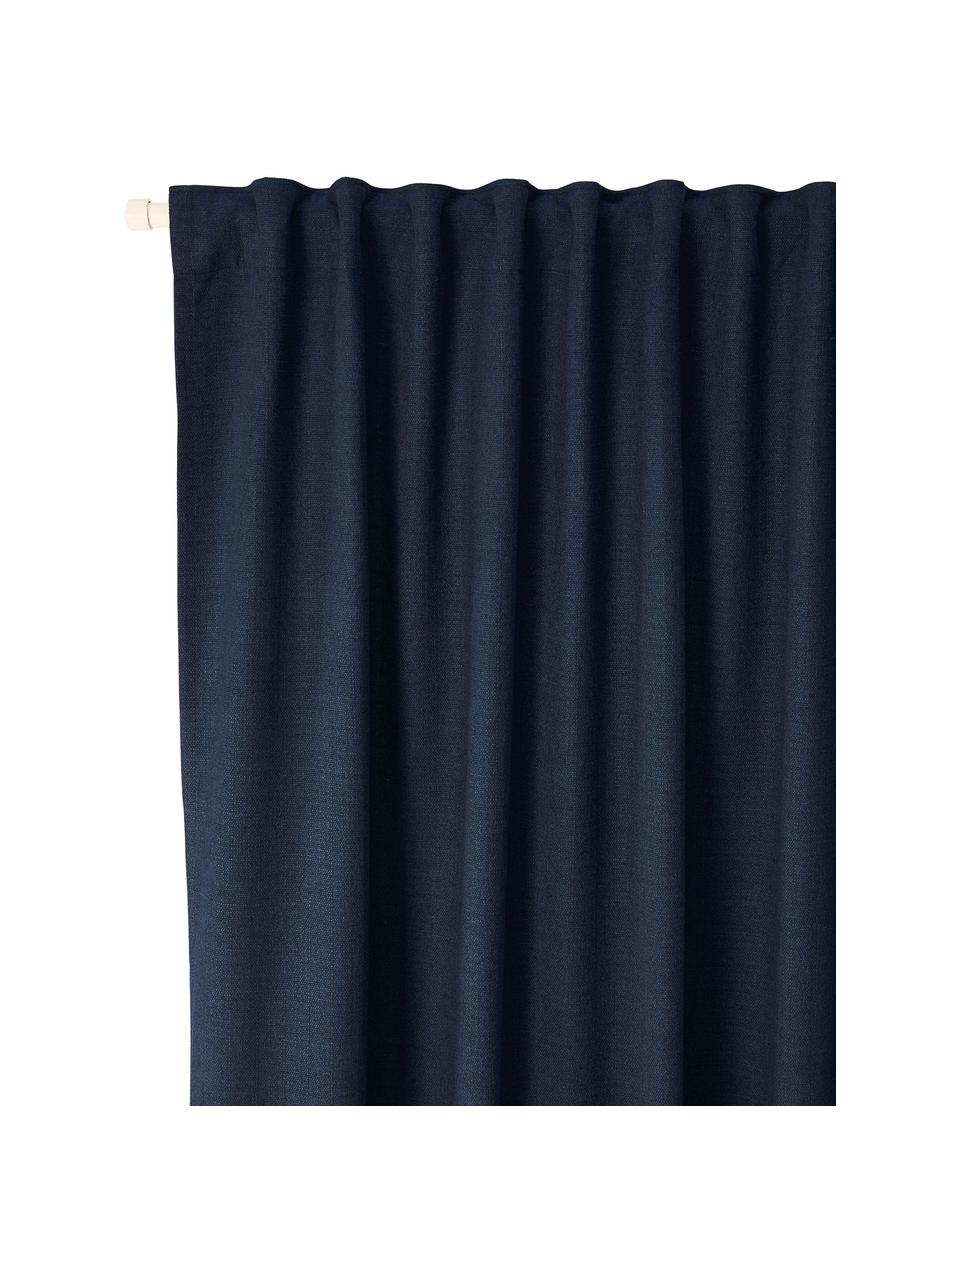 Ondoorzichtige gordijn Jensen in donkerblauw met multiband, 2 stuks, 95% polyester, 5% nylon, Donkerblauw, B 130 x L 260 cm